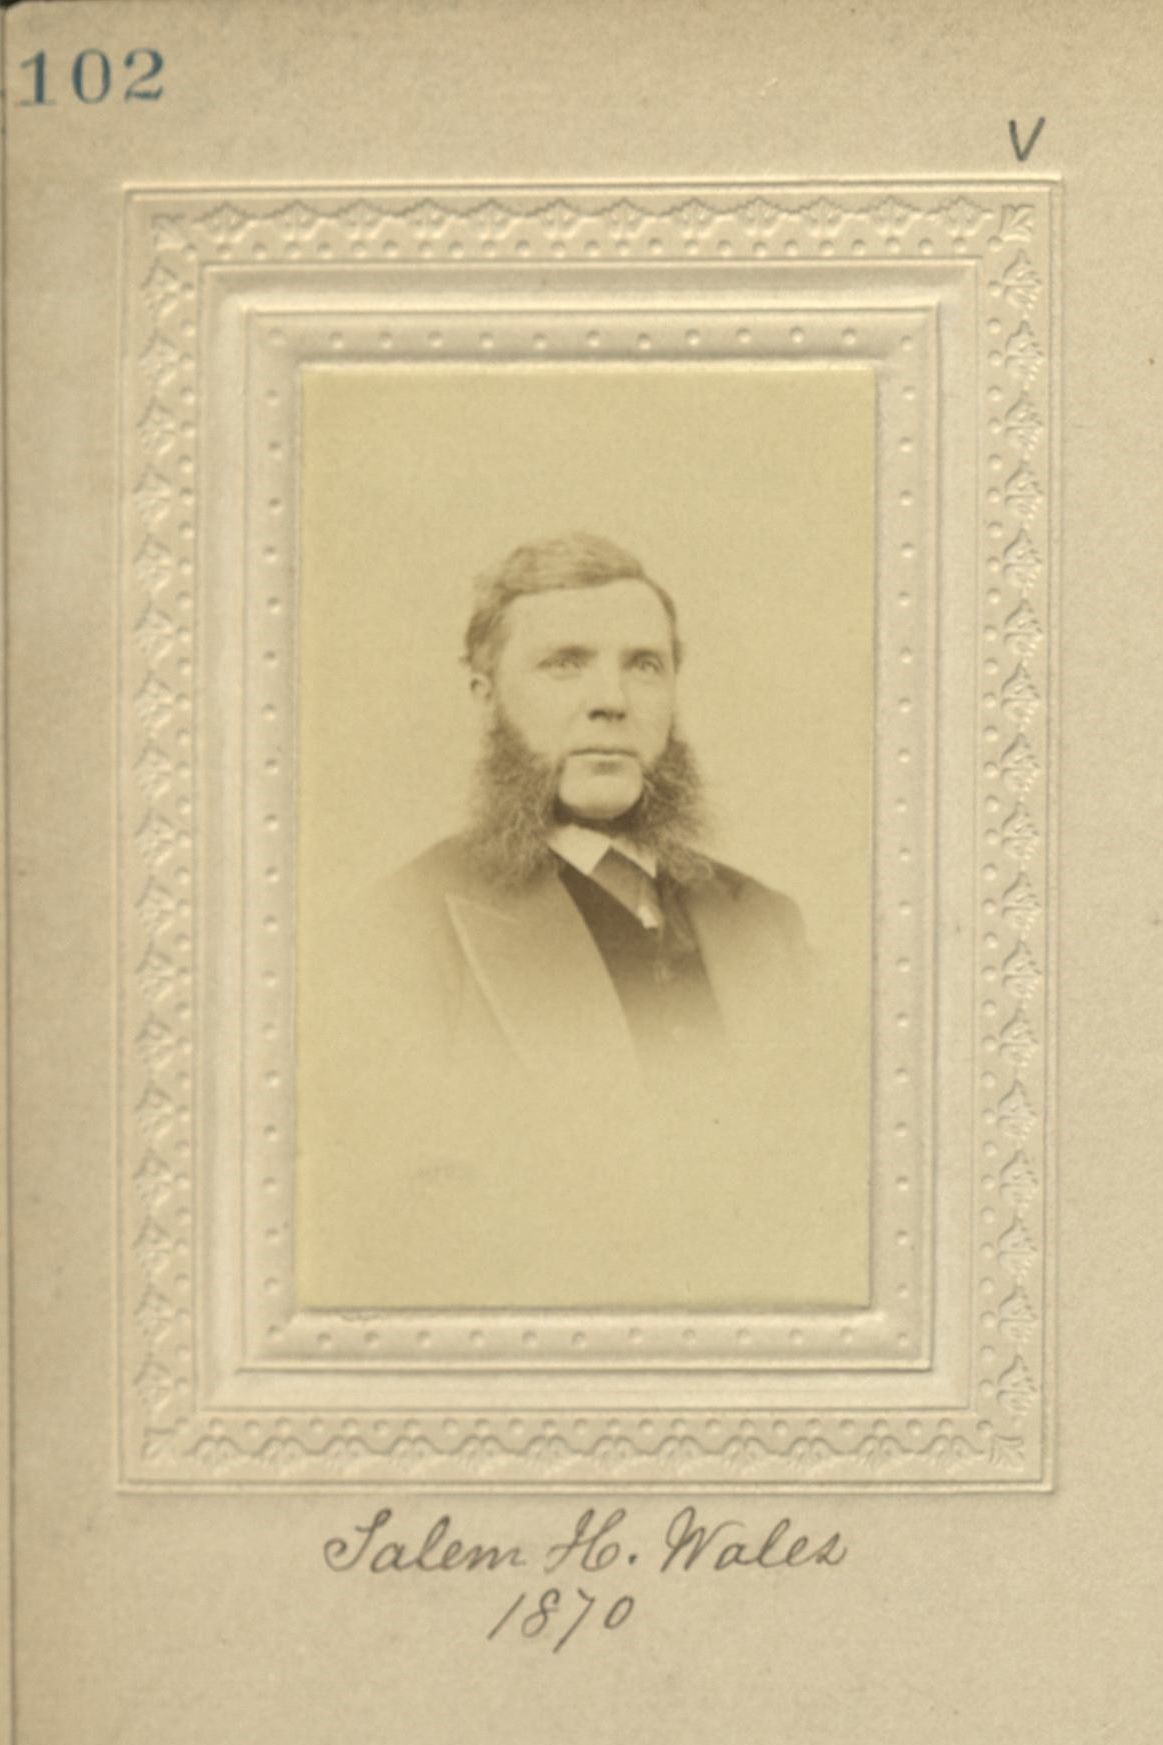 Member portrait of Salem H. Wales